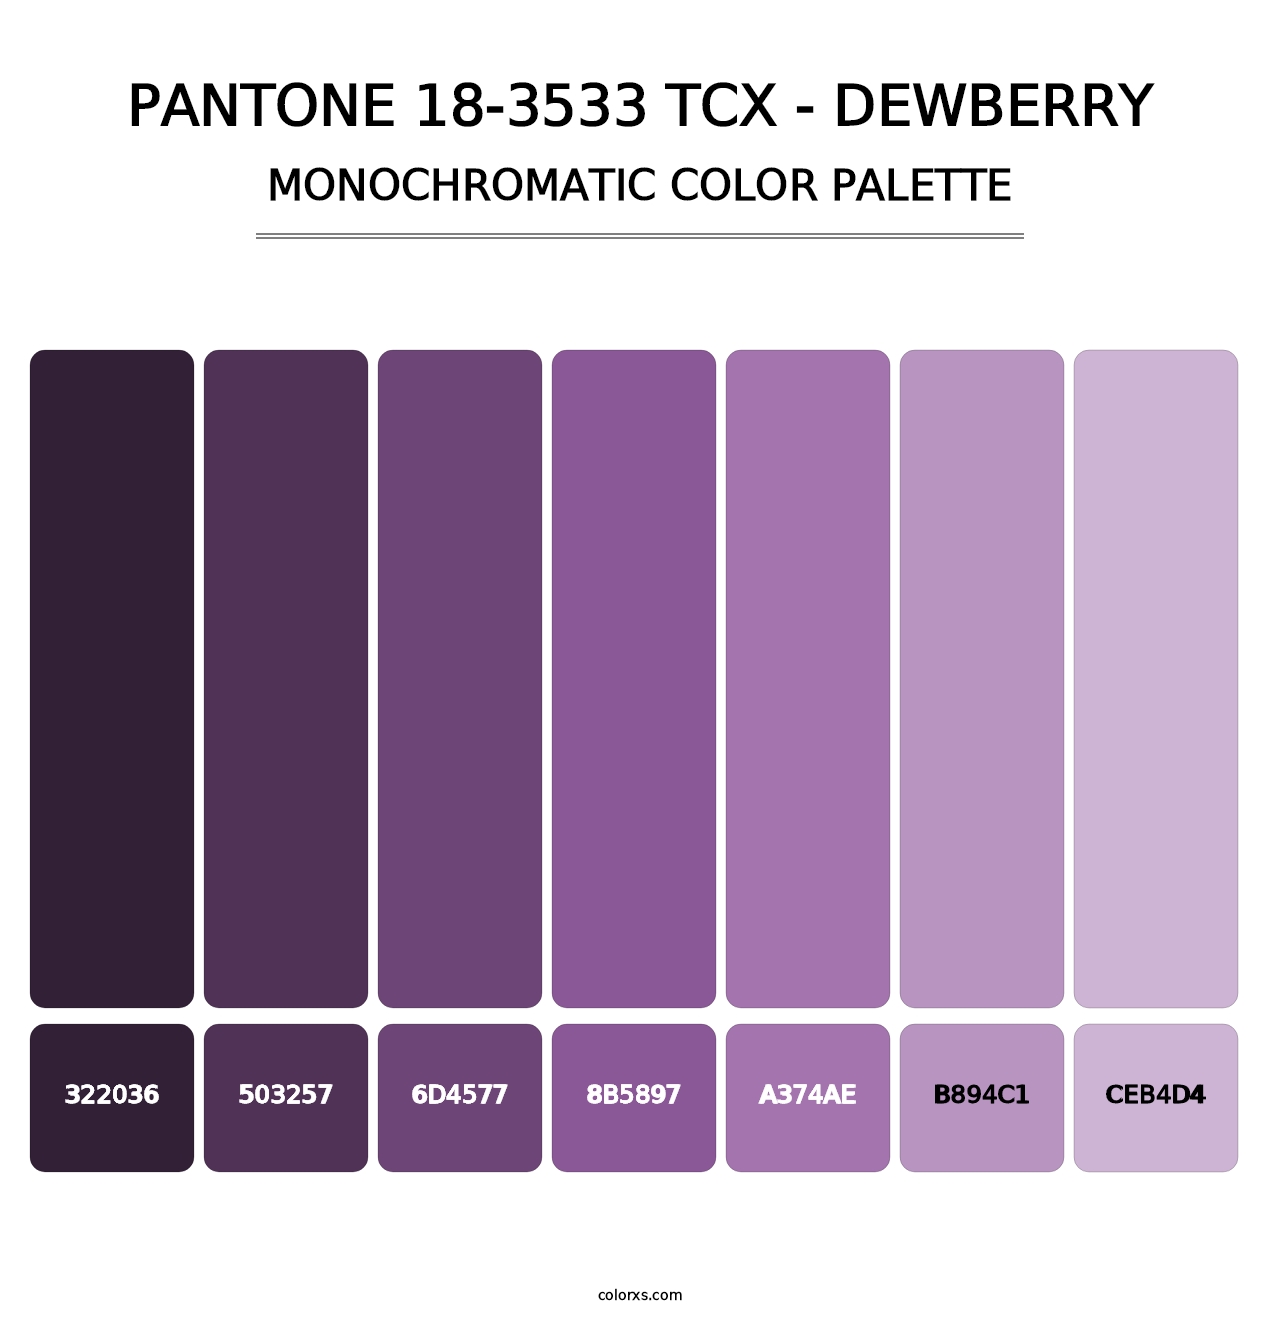 PANTONE 18-3533 TCX - Dewberry - Monochromatic Color Palette